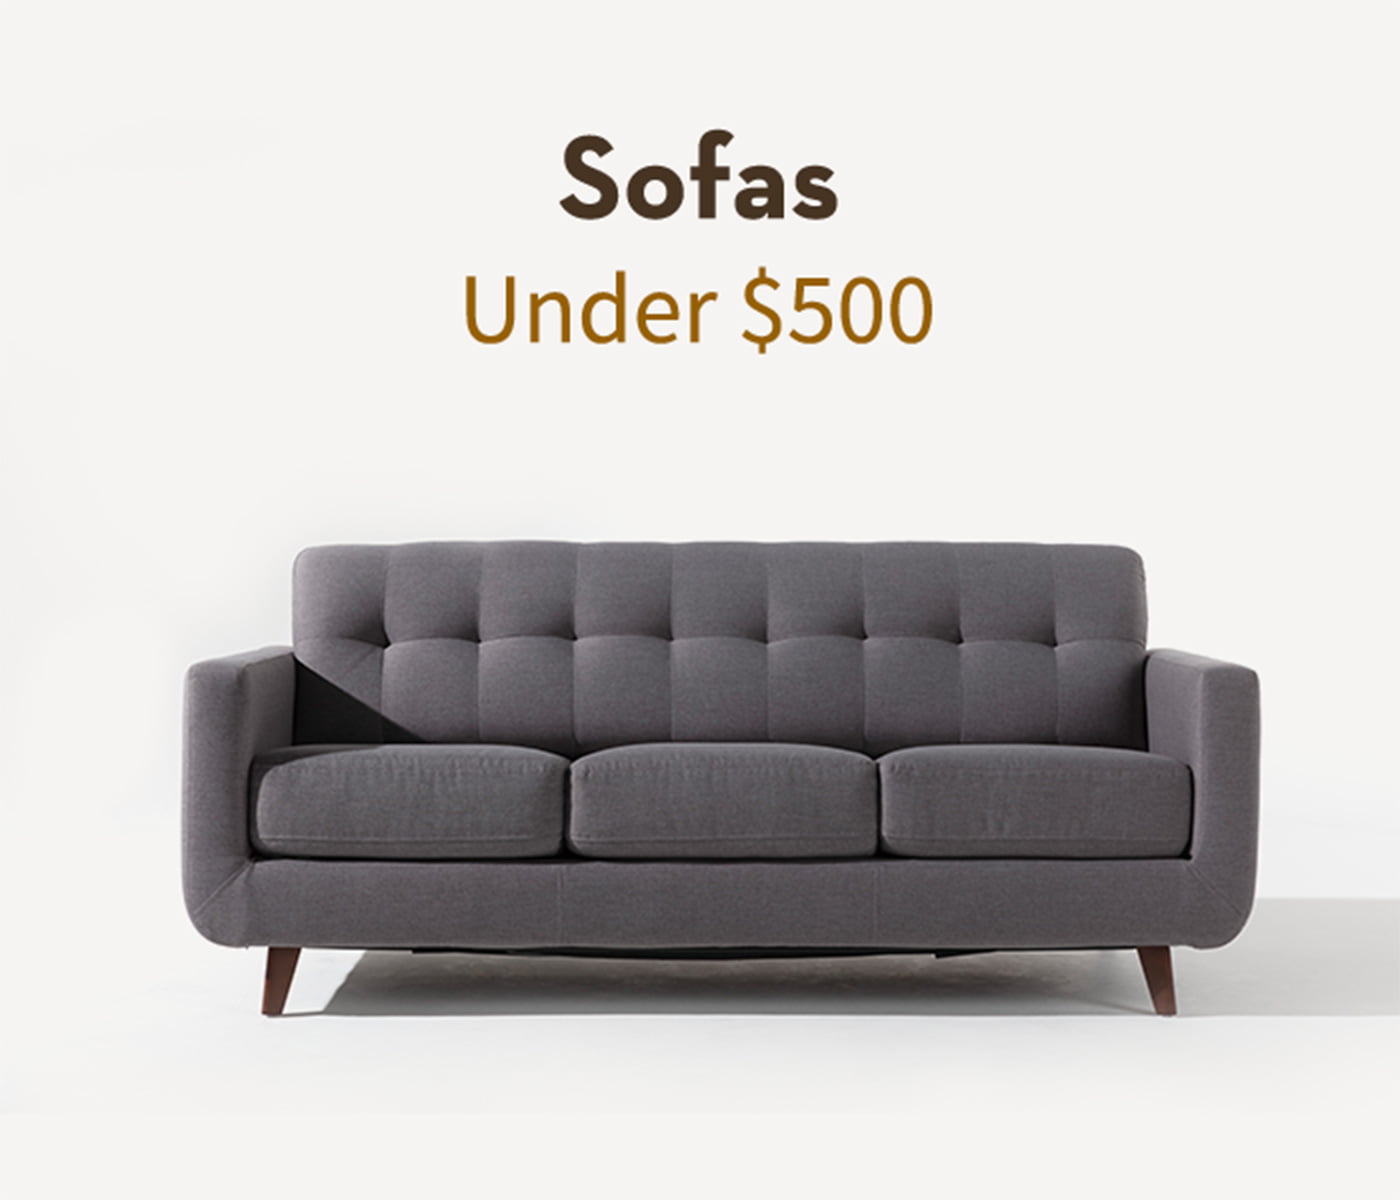 Sofas under $500